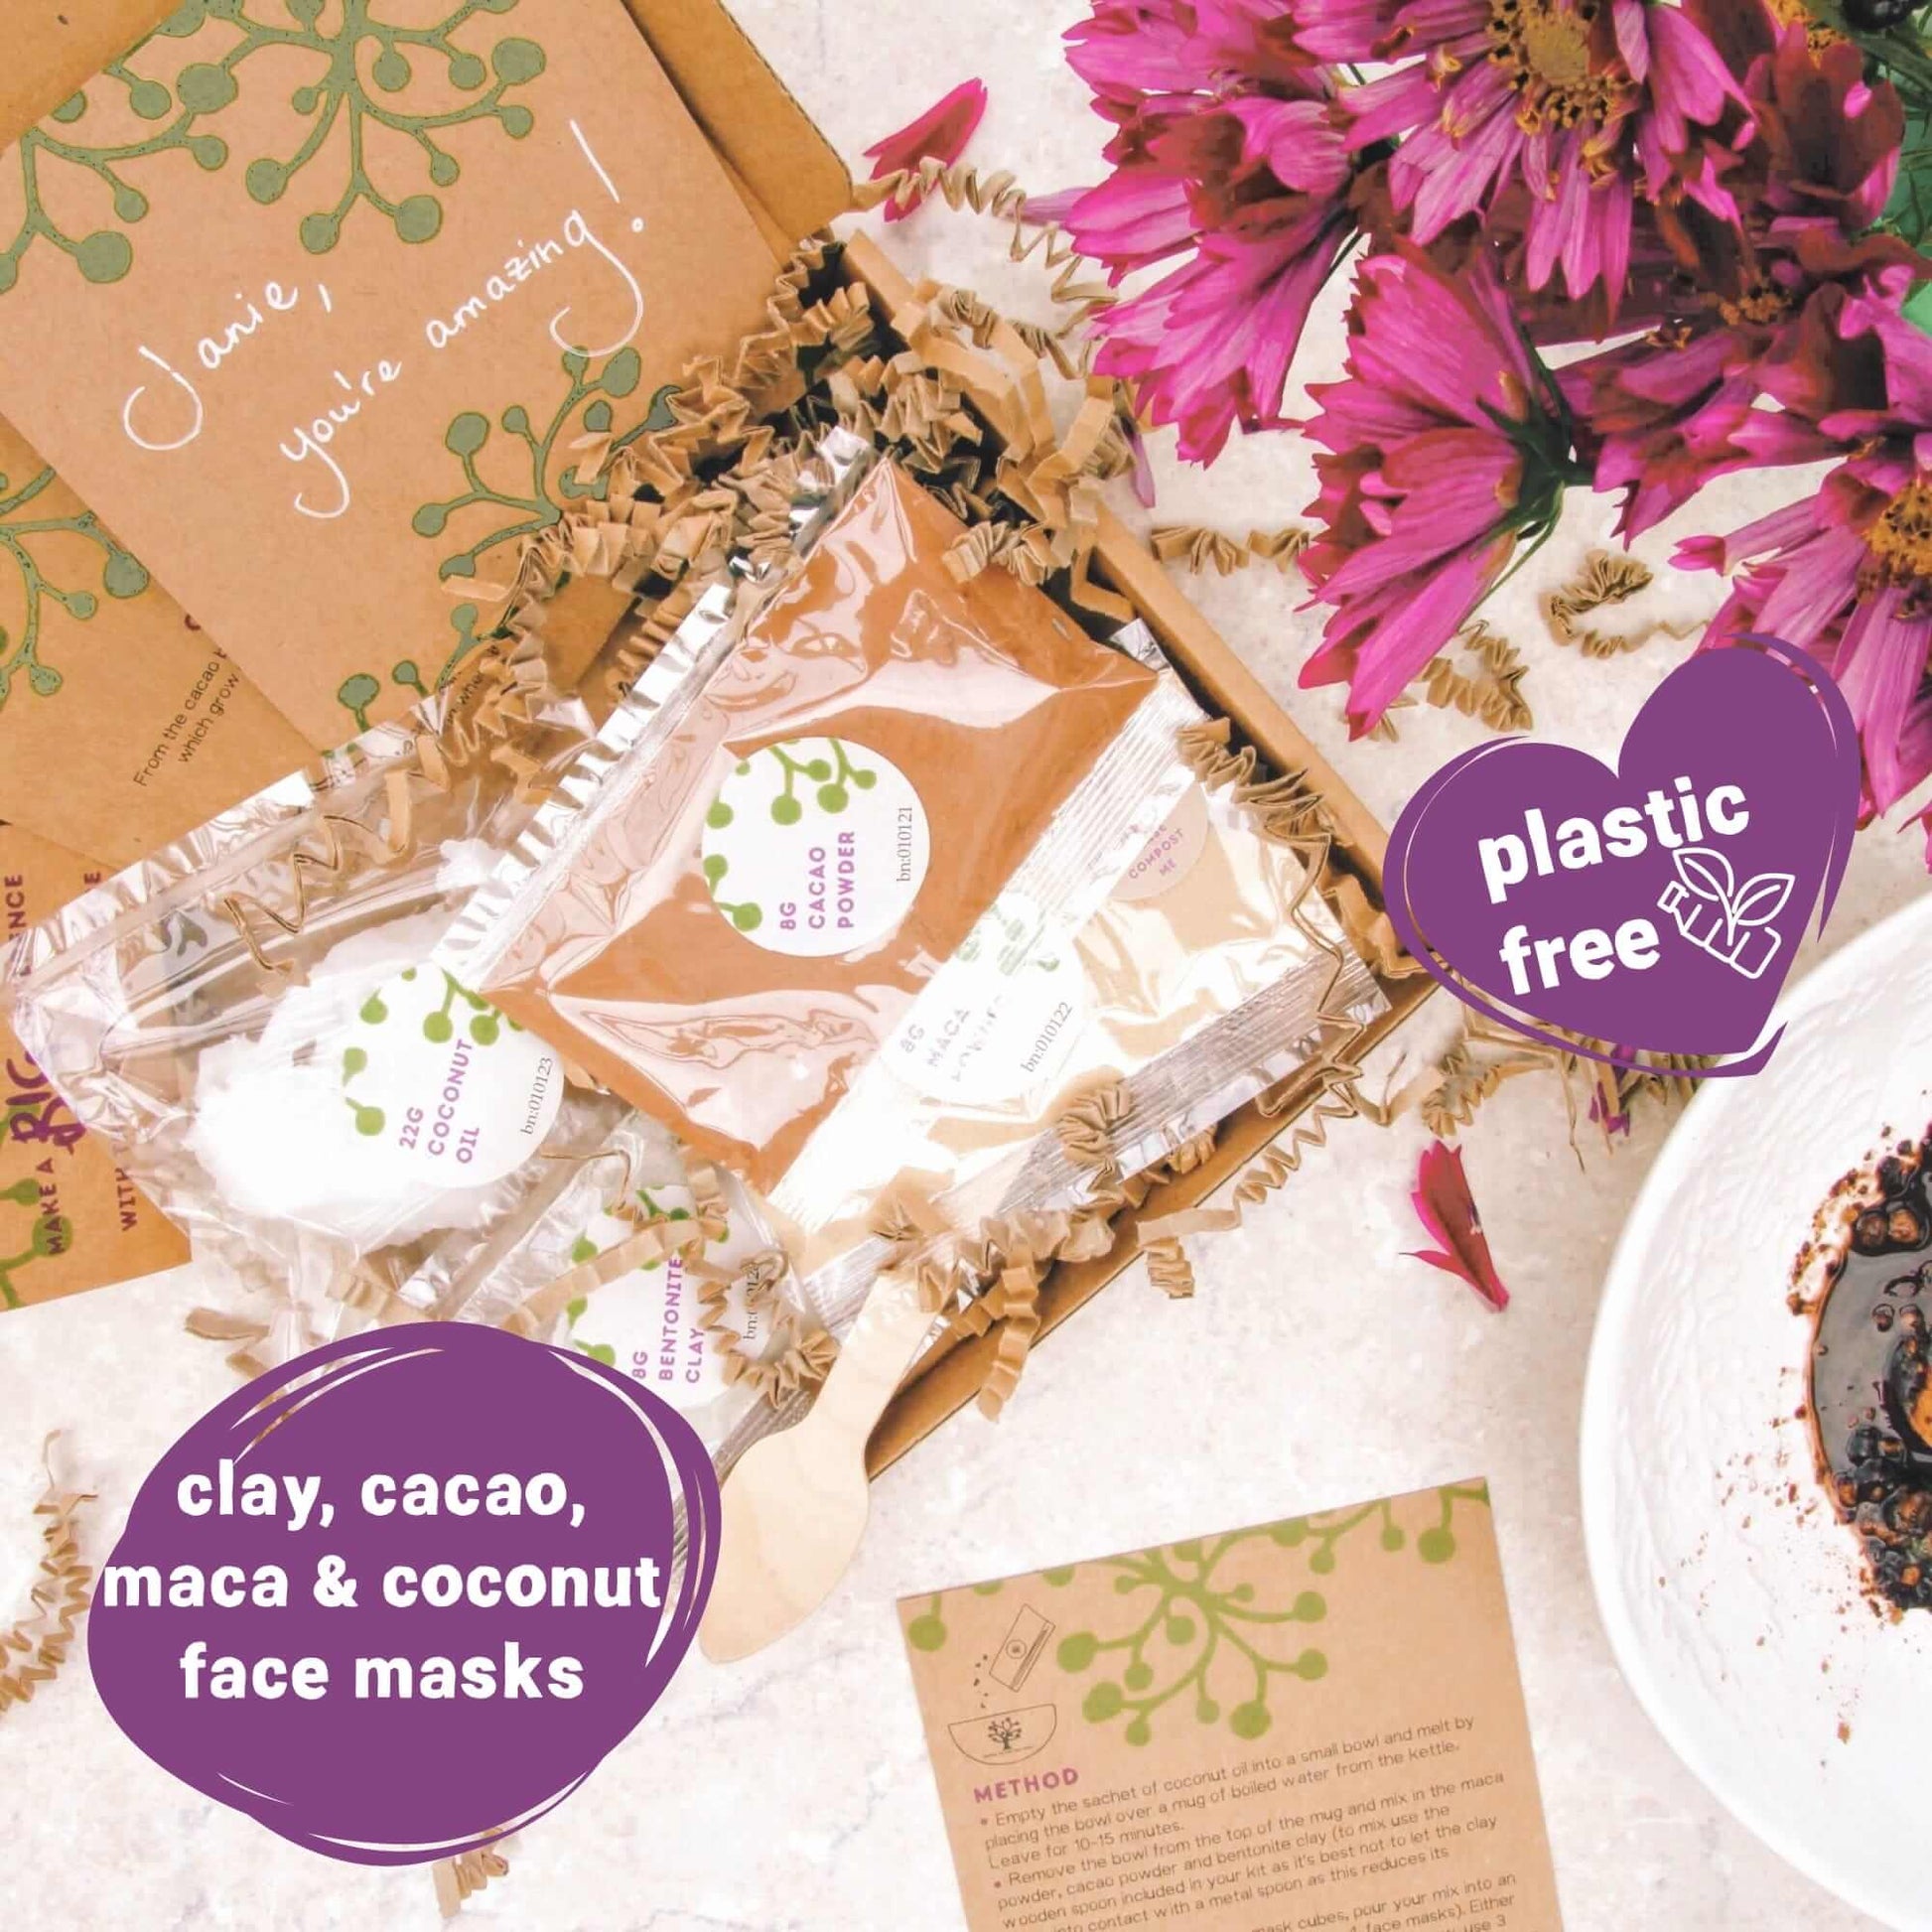 organic vegan face mask kit ingredients inside bride to be gift